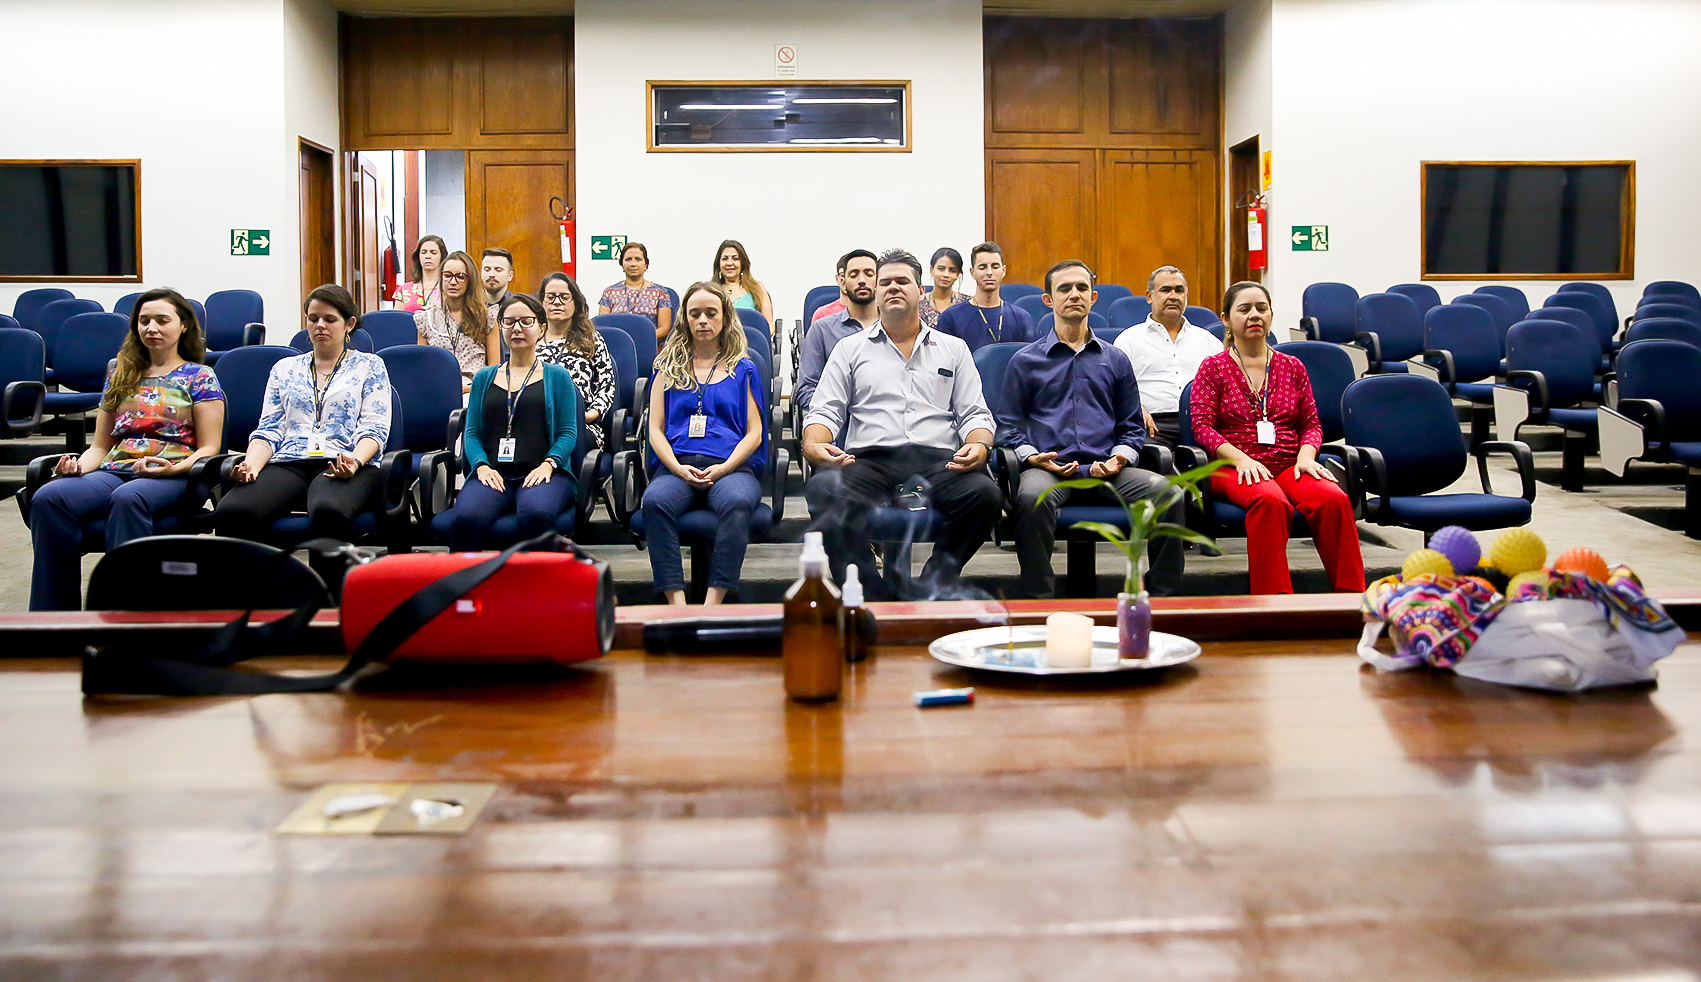 INSTITUCIONAL: Justiça Federal no DF realiza sessões de meditação e ensina técnicas que reduzem estresse